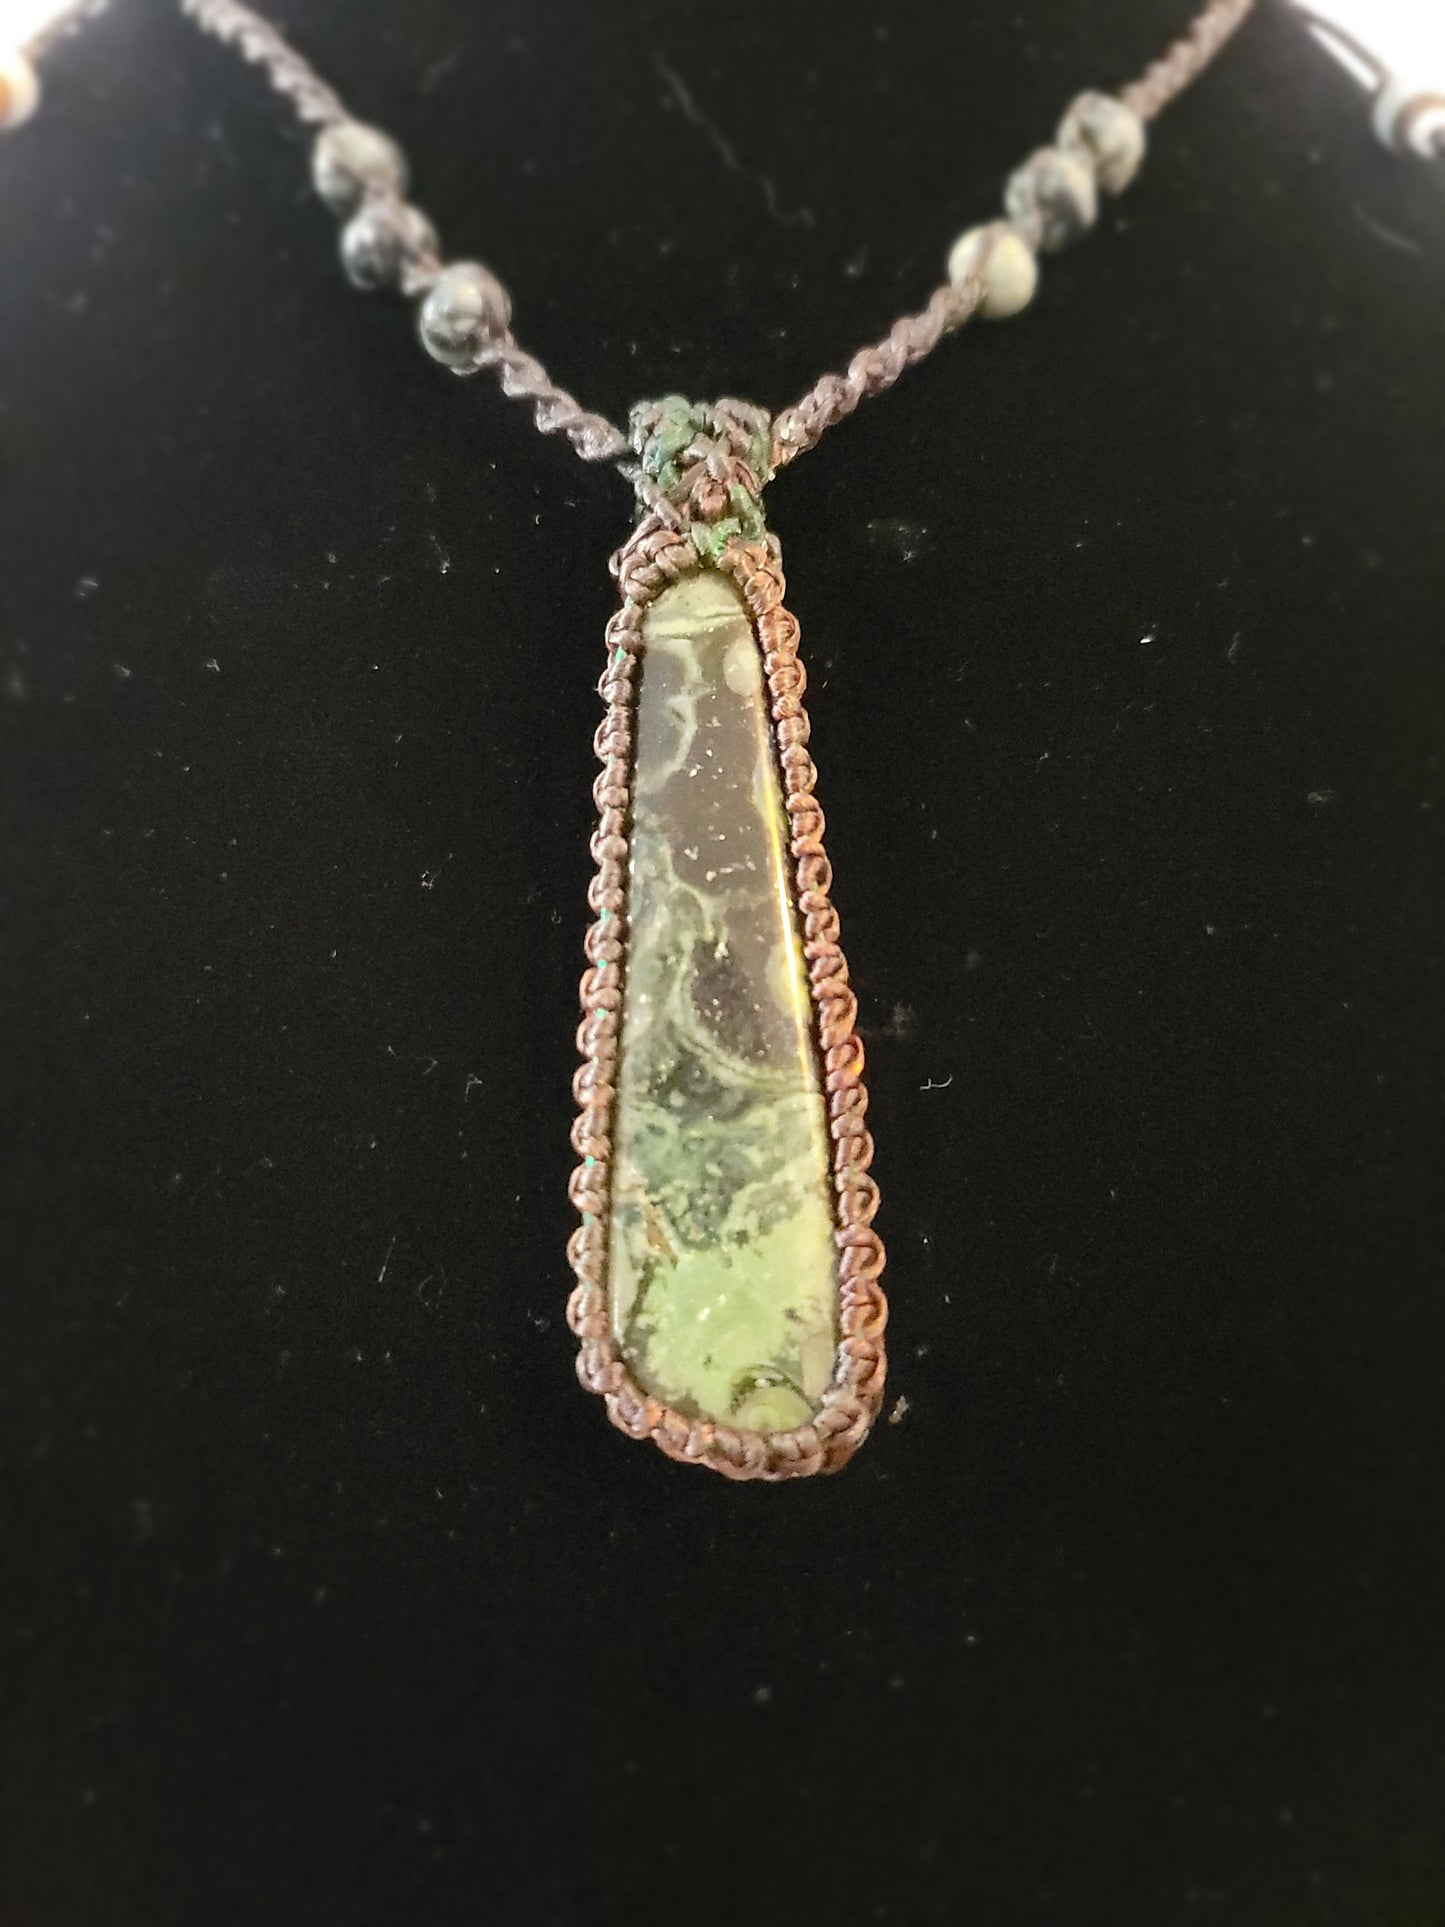 Kambaba Jasper Pendant - Healing Stone Necklace - Adjustable, Sustainable, Ethical